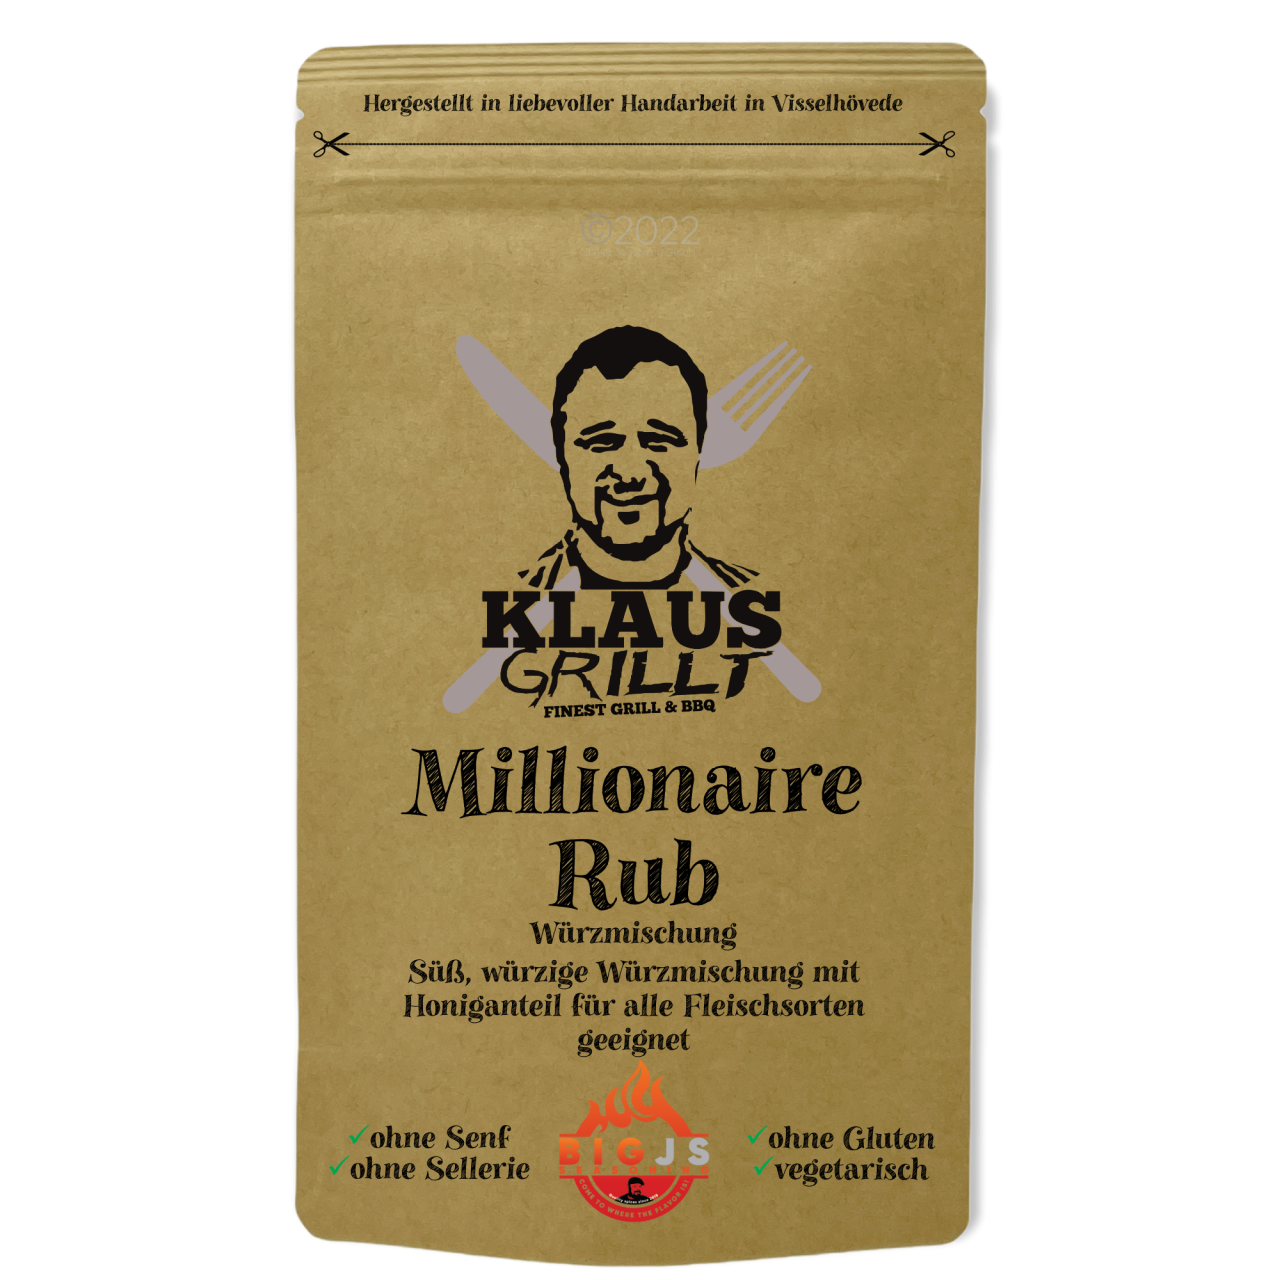 Klaus grillt Millionaire's Rub 250g Beutel